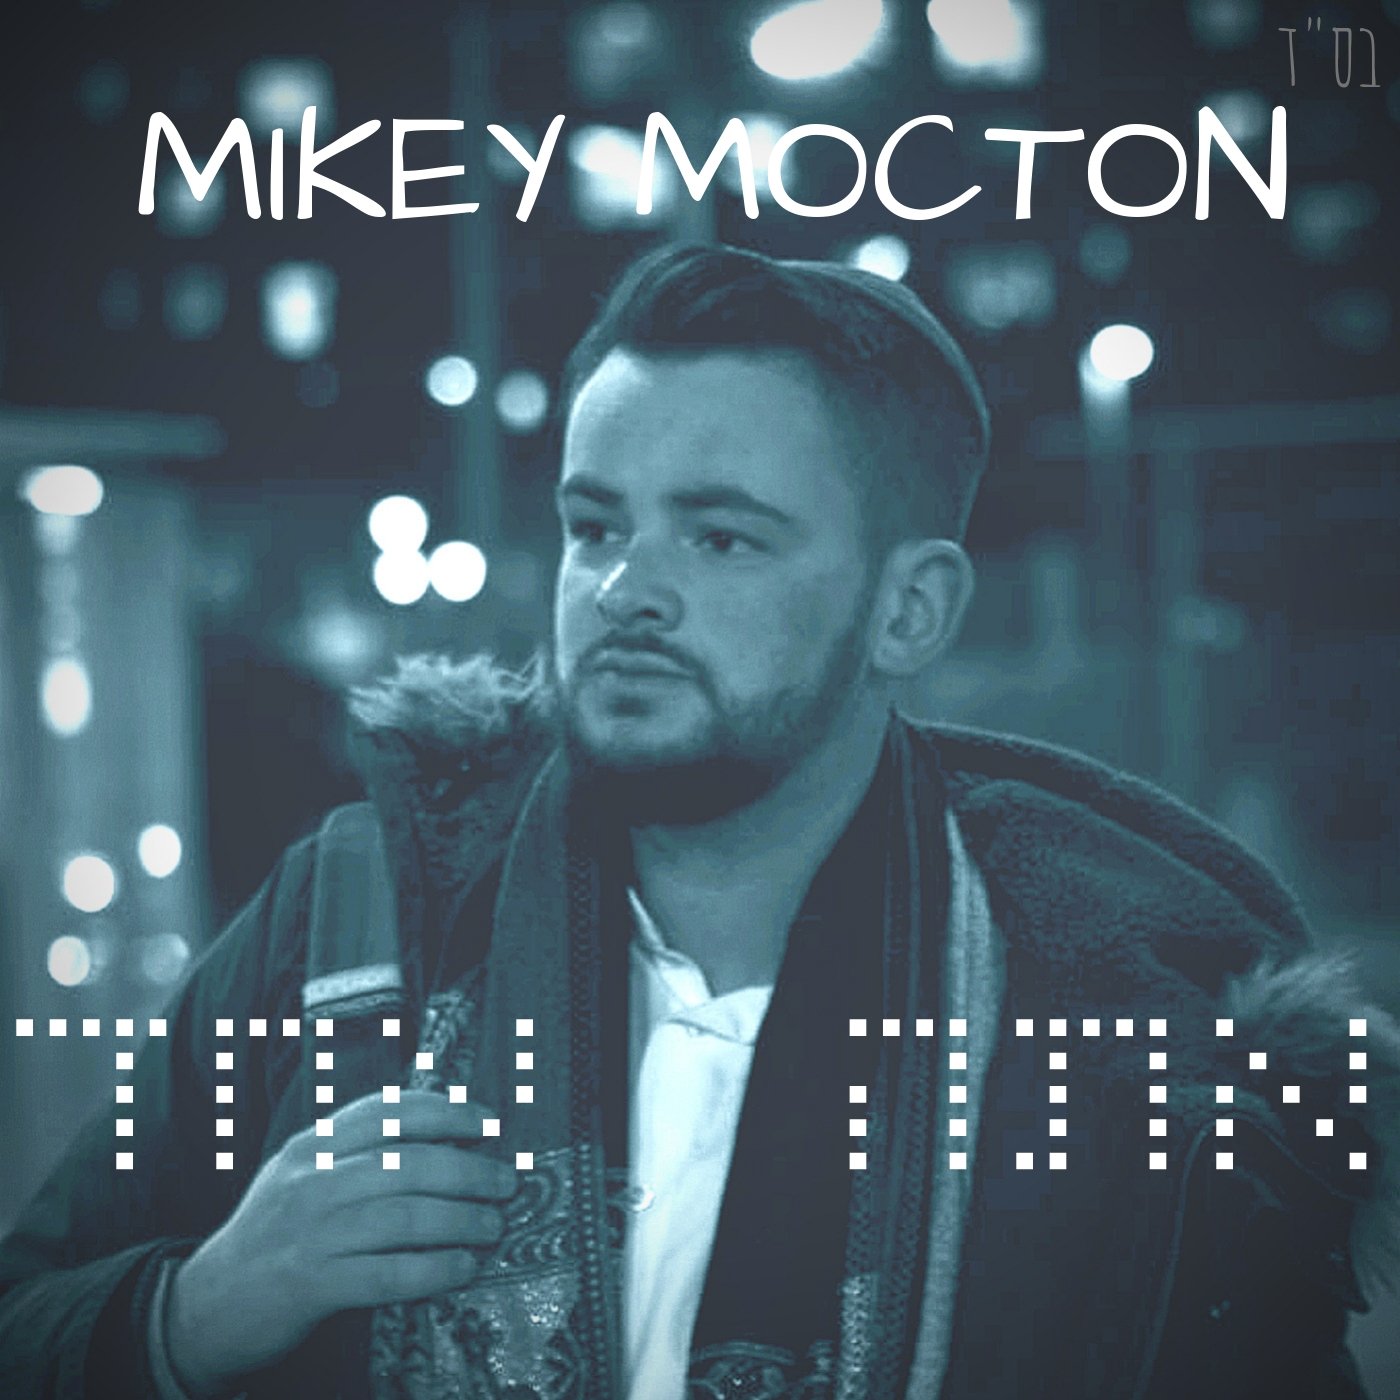 Mikey Mocton - Ata Echad (Single)